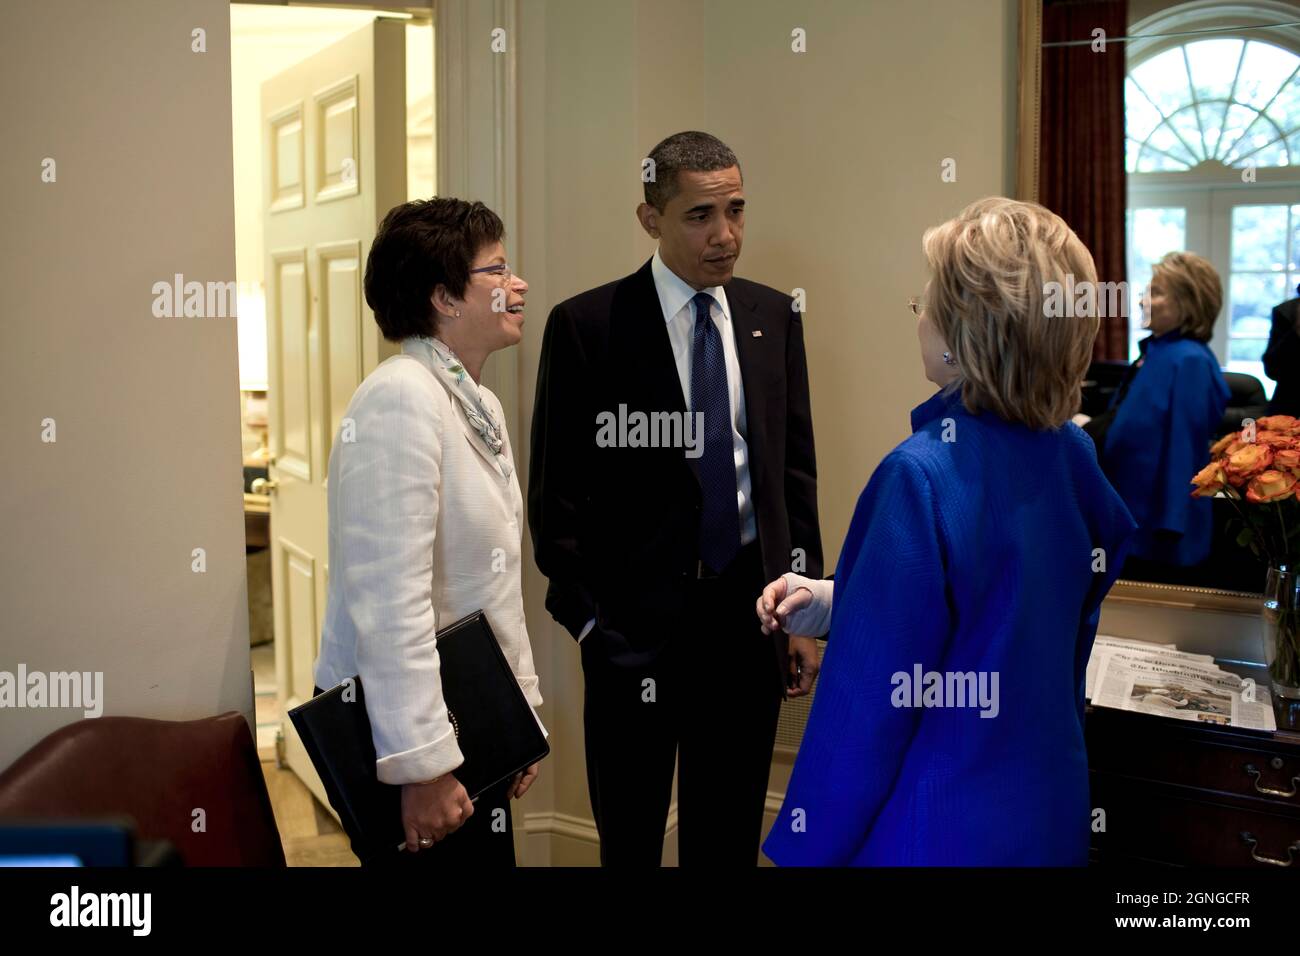 Le président Barack Obama rencontre la secrétaire d'État Hillary Clinton 6/22/09 à la Maison Blanche. Photo officielle de la Maison Blanche par Pete Souza Banque D'Images